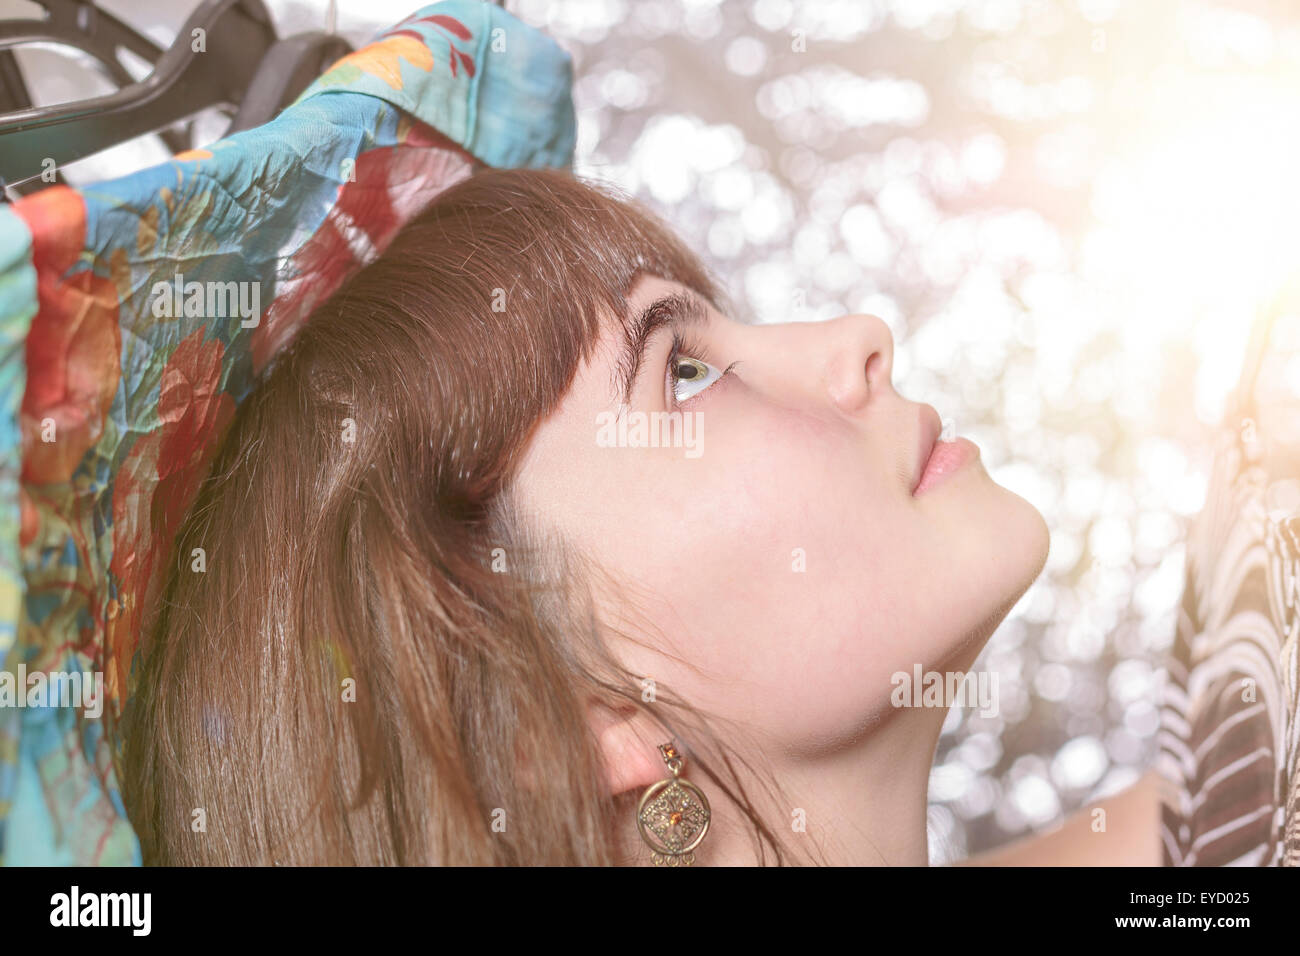 Ritratto di una bella ragazza adolescente e il suo guardaroba, con bokeh di fondo Foto Stock